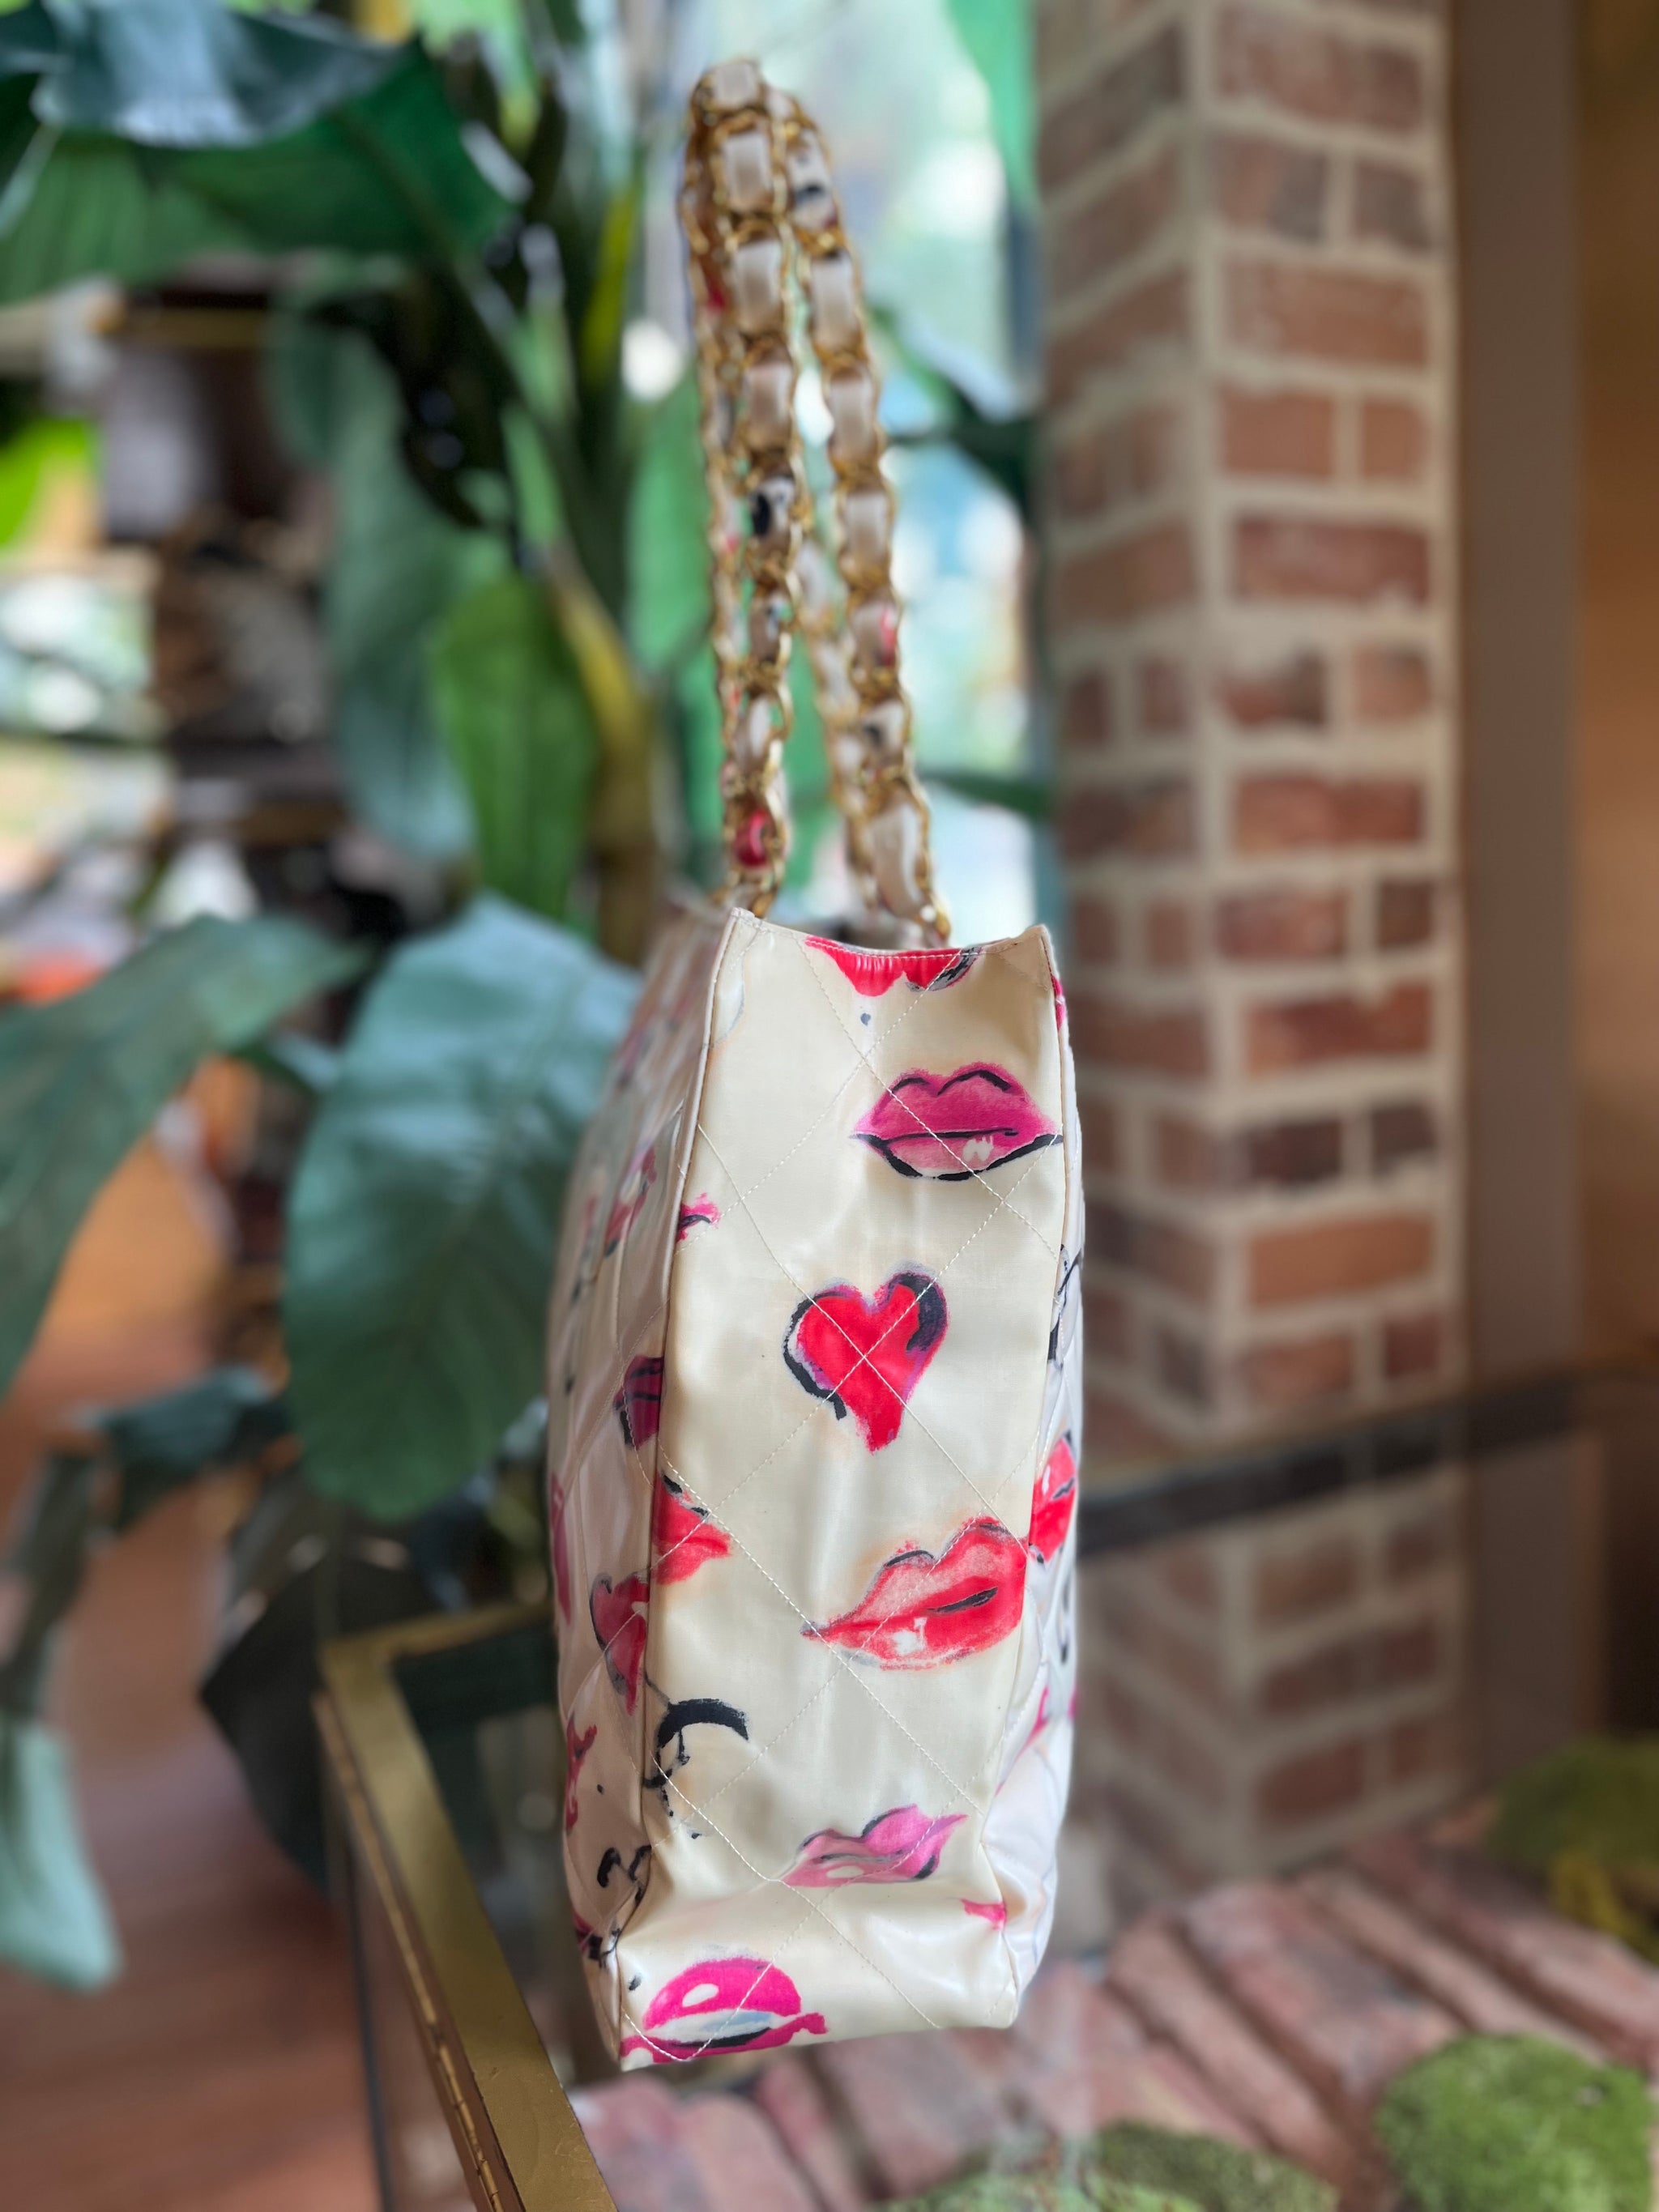 vintage chanel heart bag pink